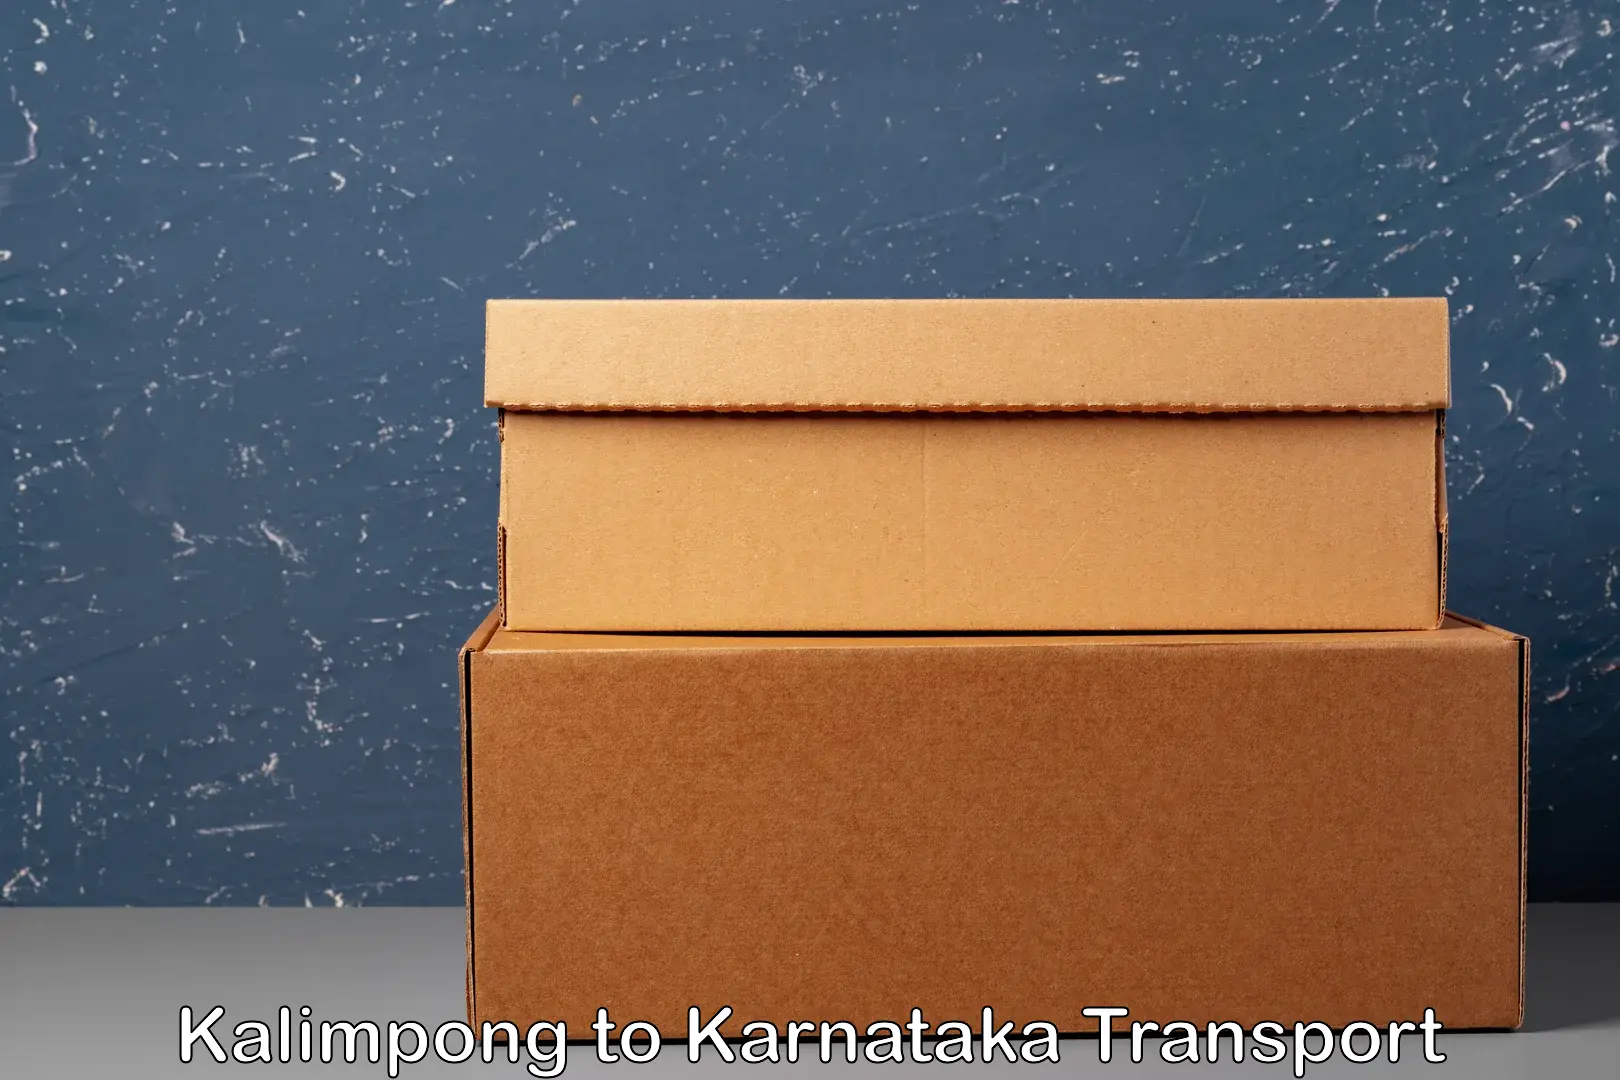 Truck transport companies in India Kalimpong to Karnataka